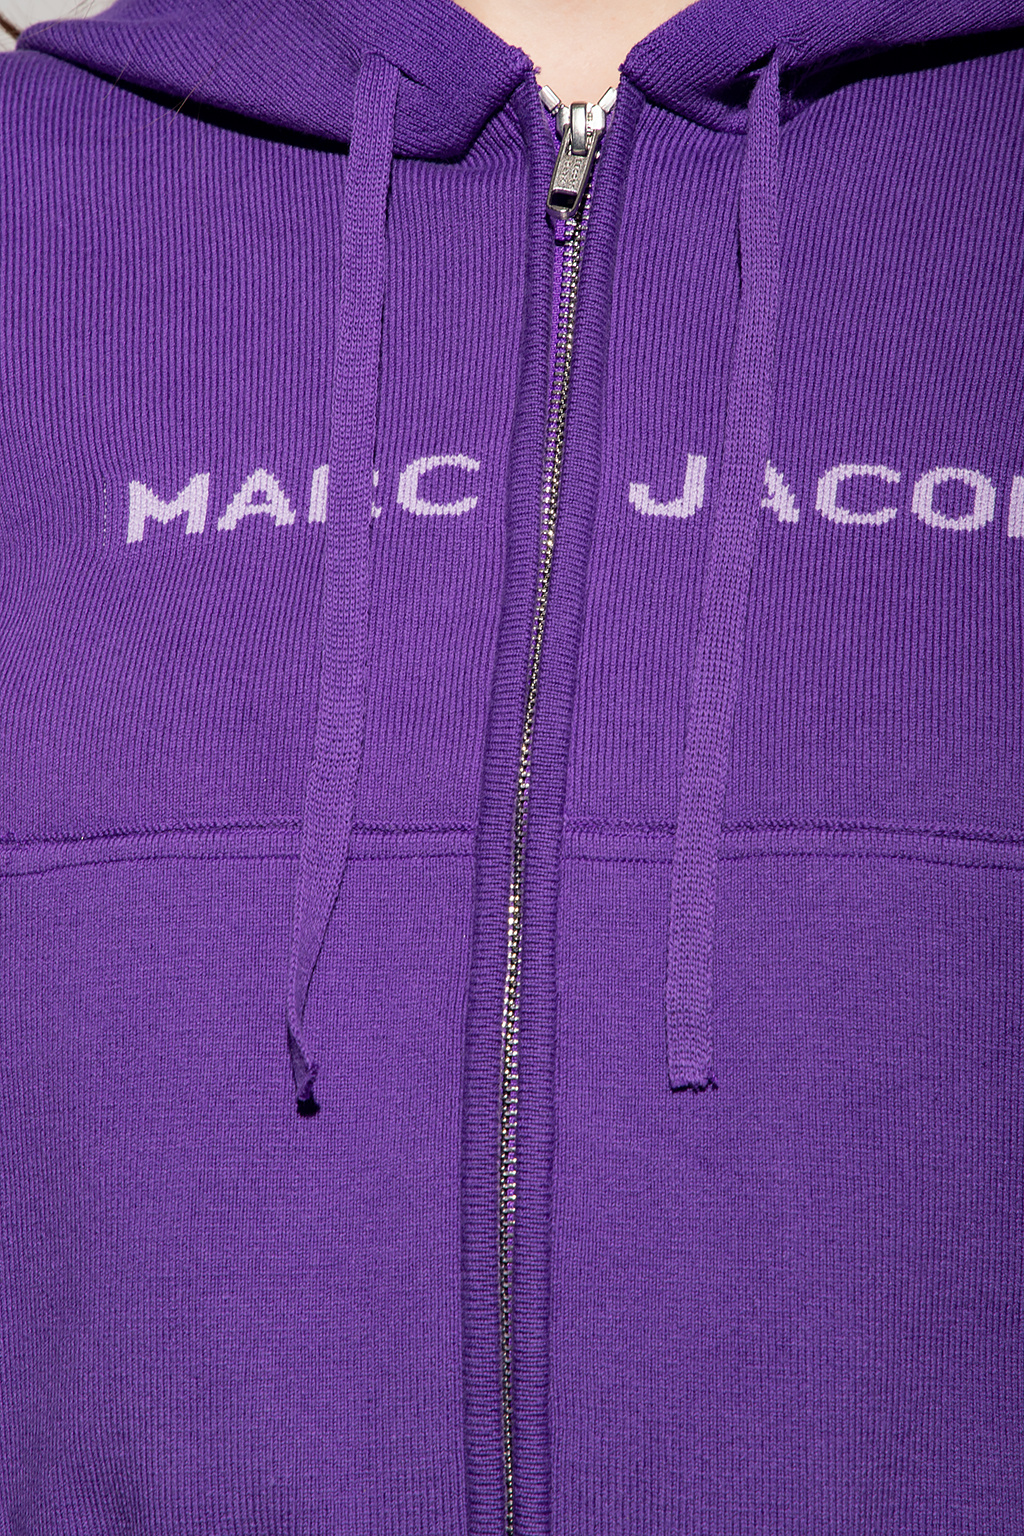 Marc Jacobs marc jacobs black top